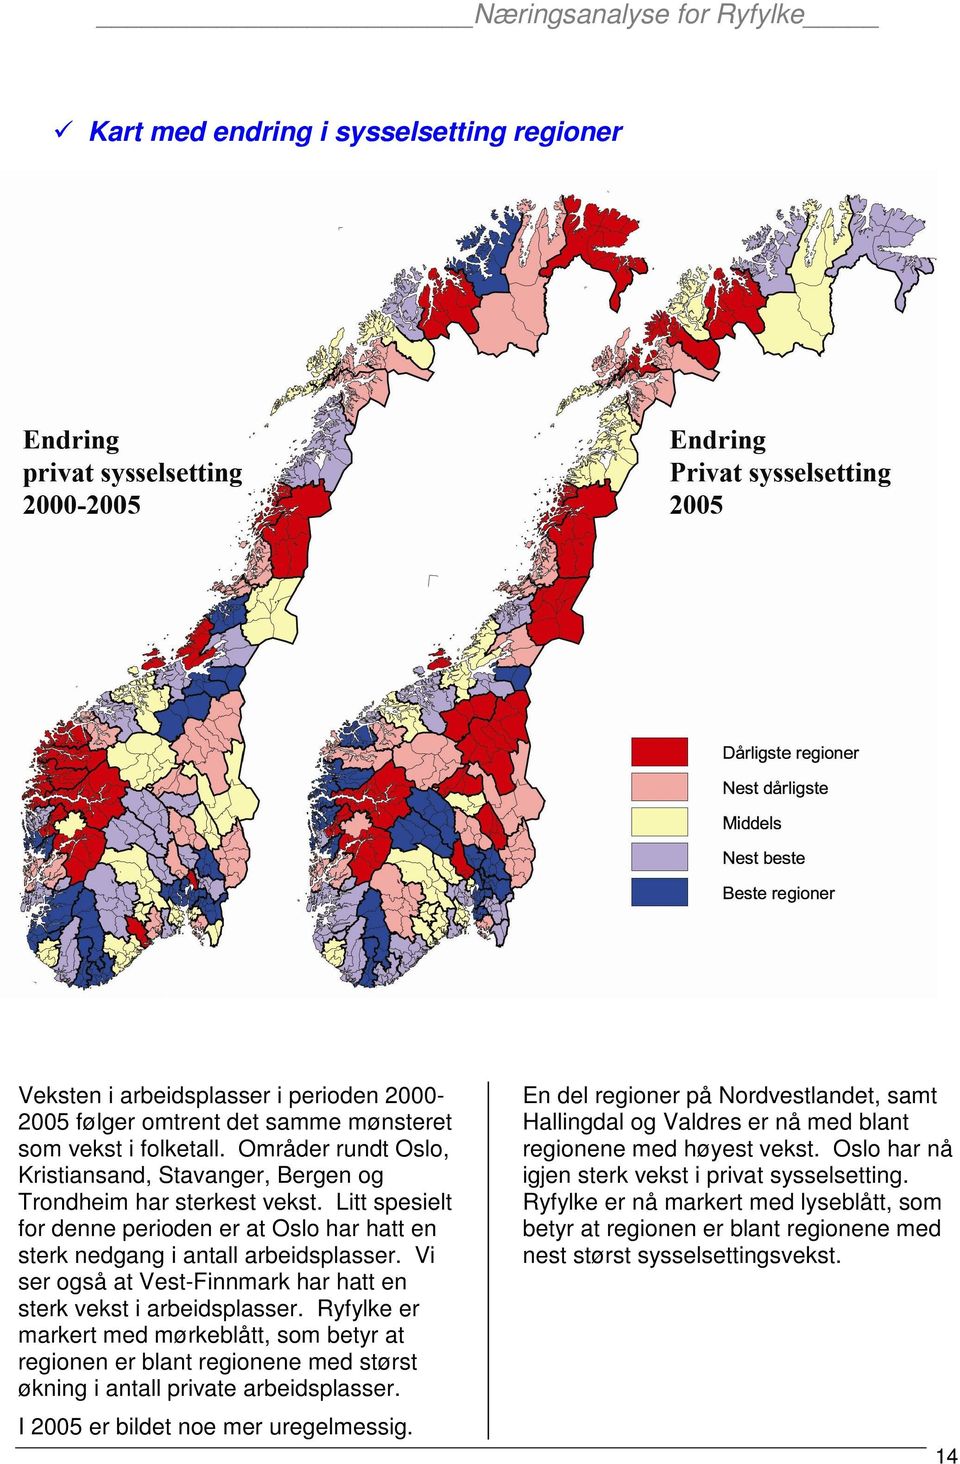 Vi ser også at Vest-Finnmark har hatt en sterk vekst i arbeidsplasser. er markert med mørkeblått, som betyr at regionen er blant regionene med størst økning i antall private arbeidsplasser.